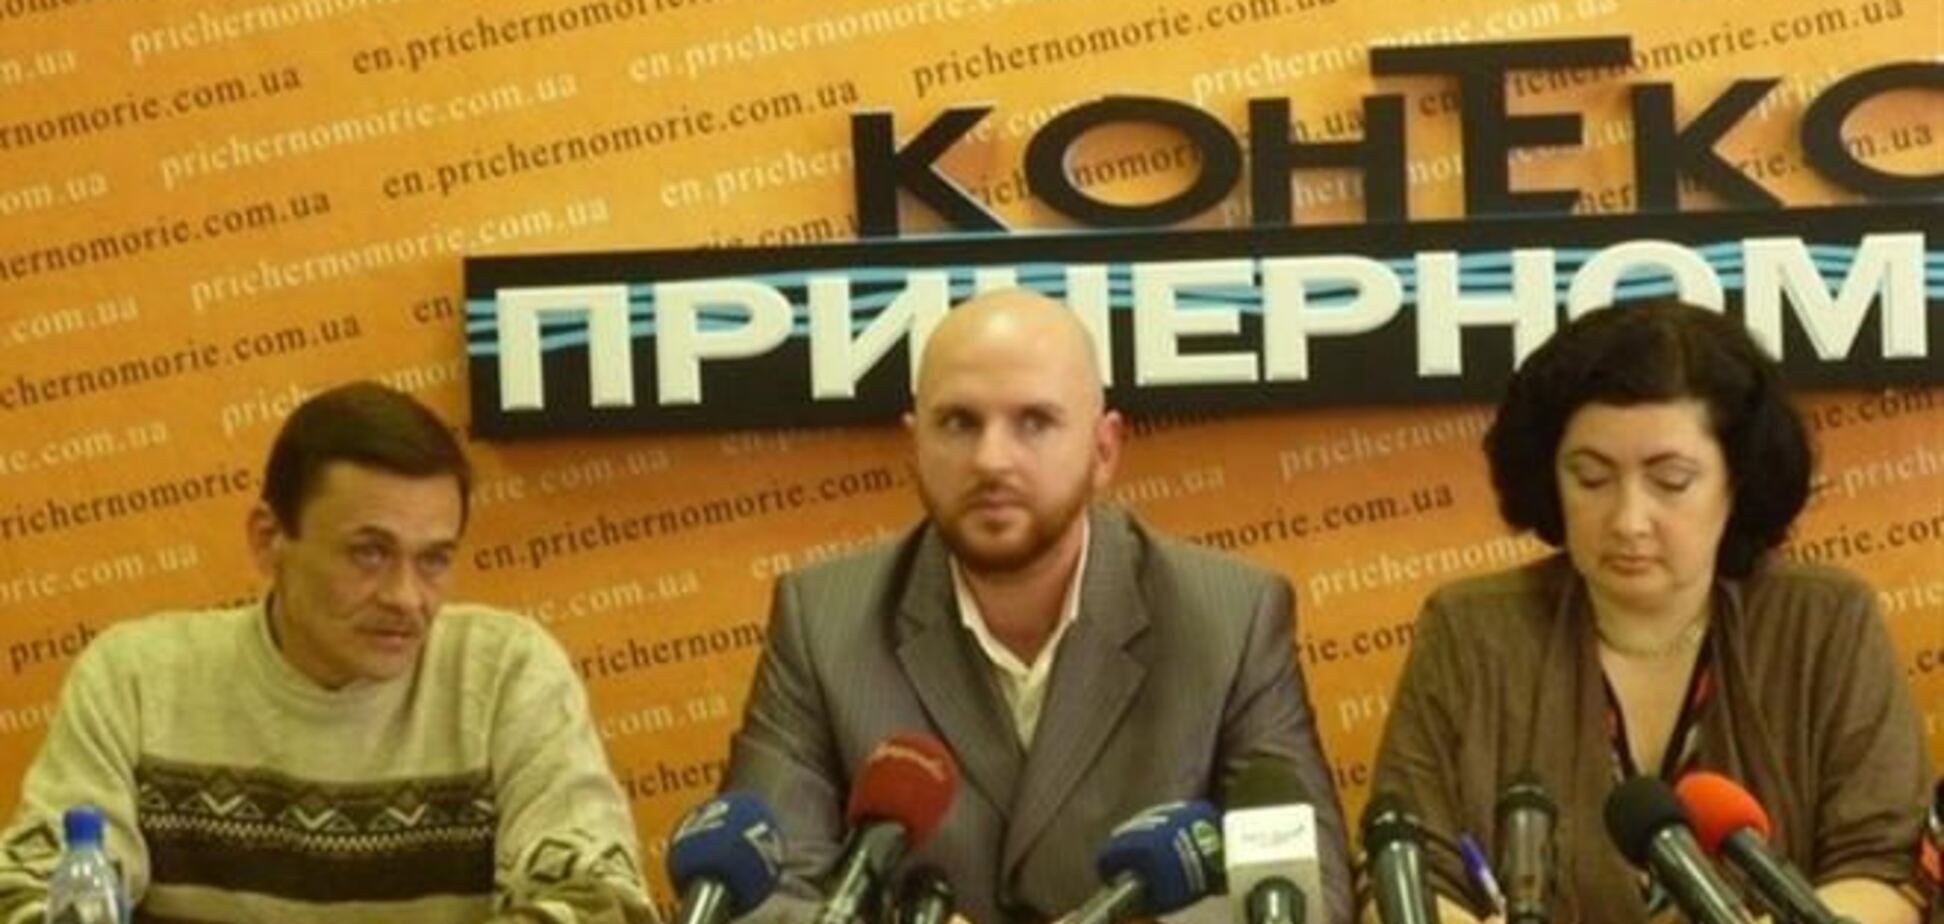 Координатор ГП'Майдан' объявил о возобновлении движения 'Общественный контроль'